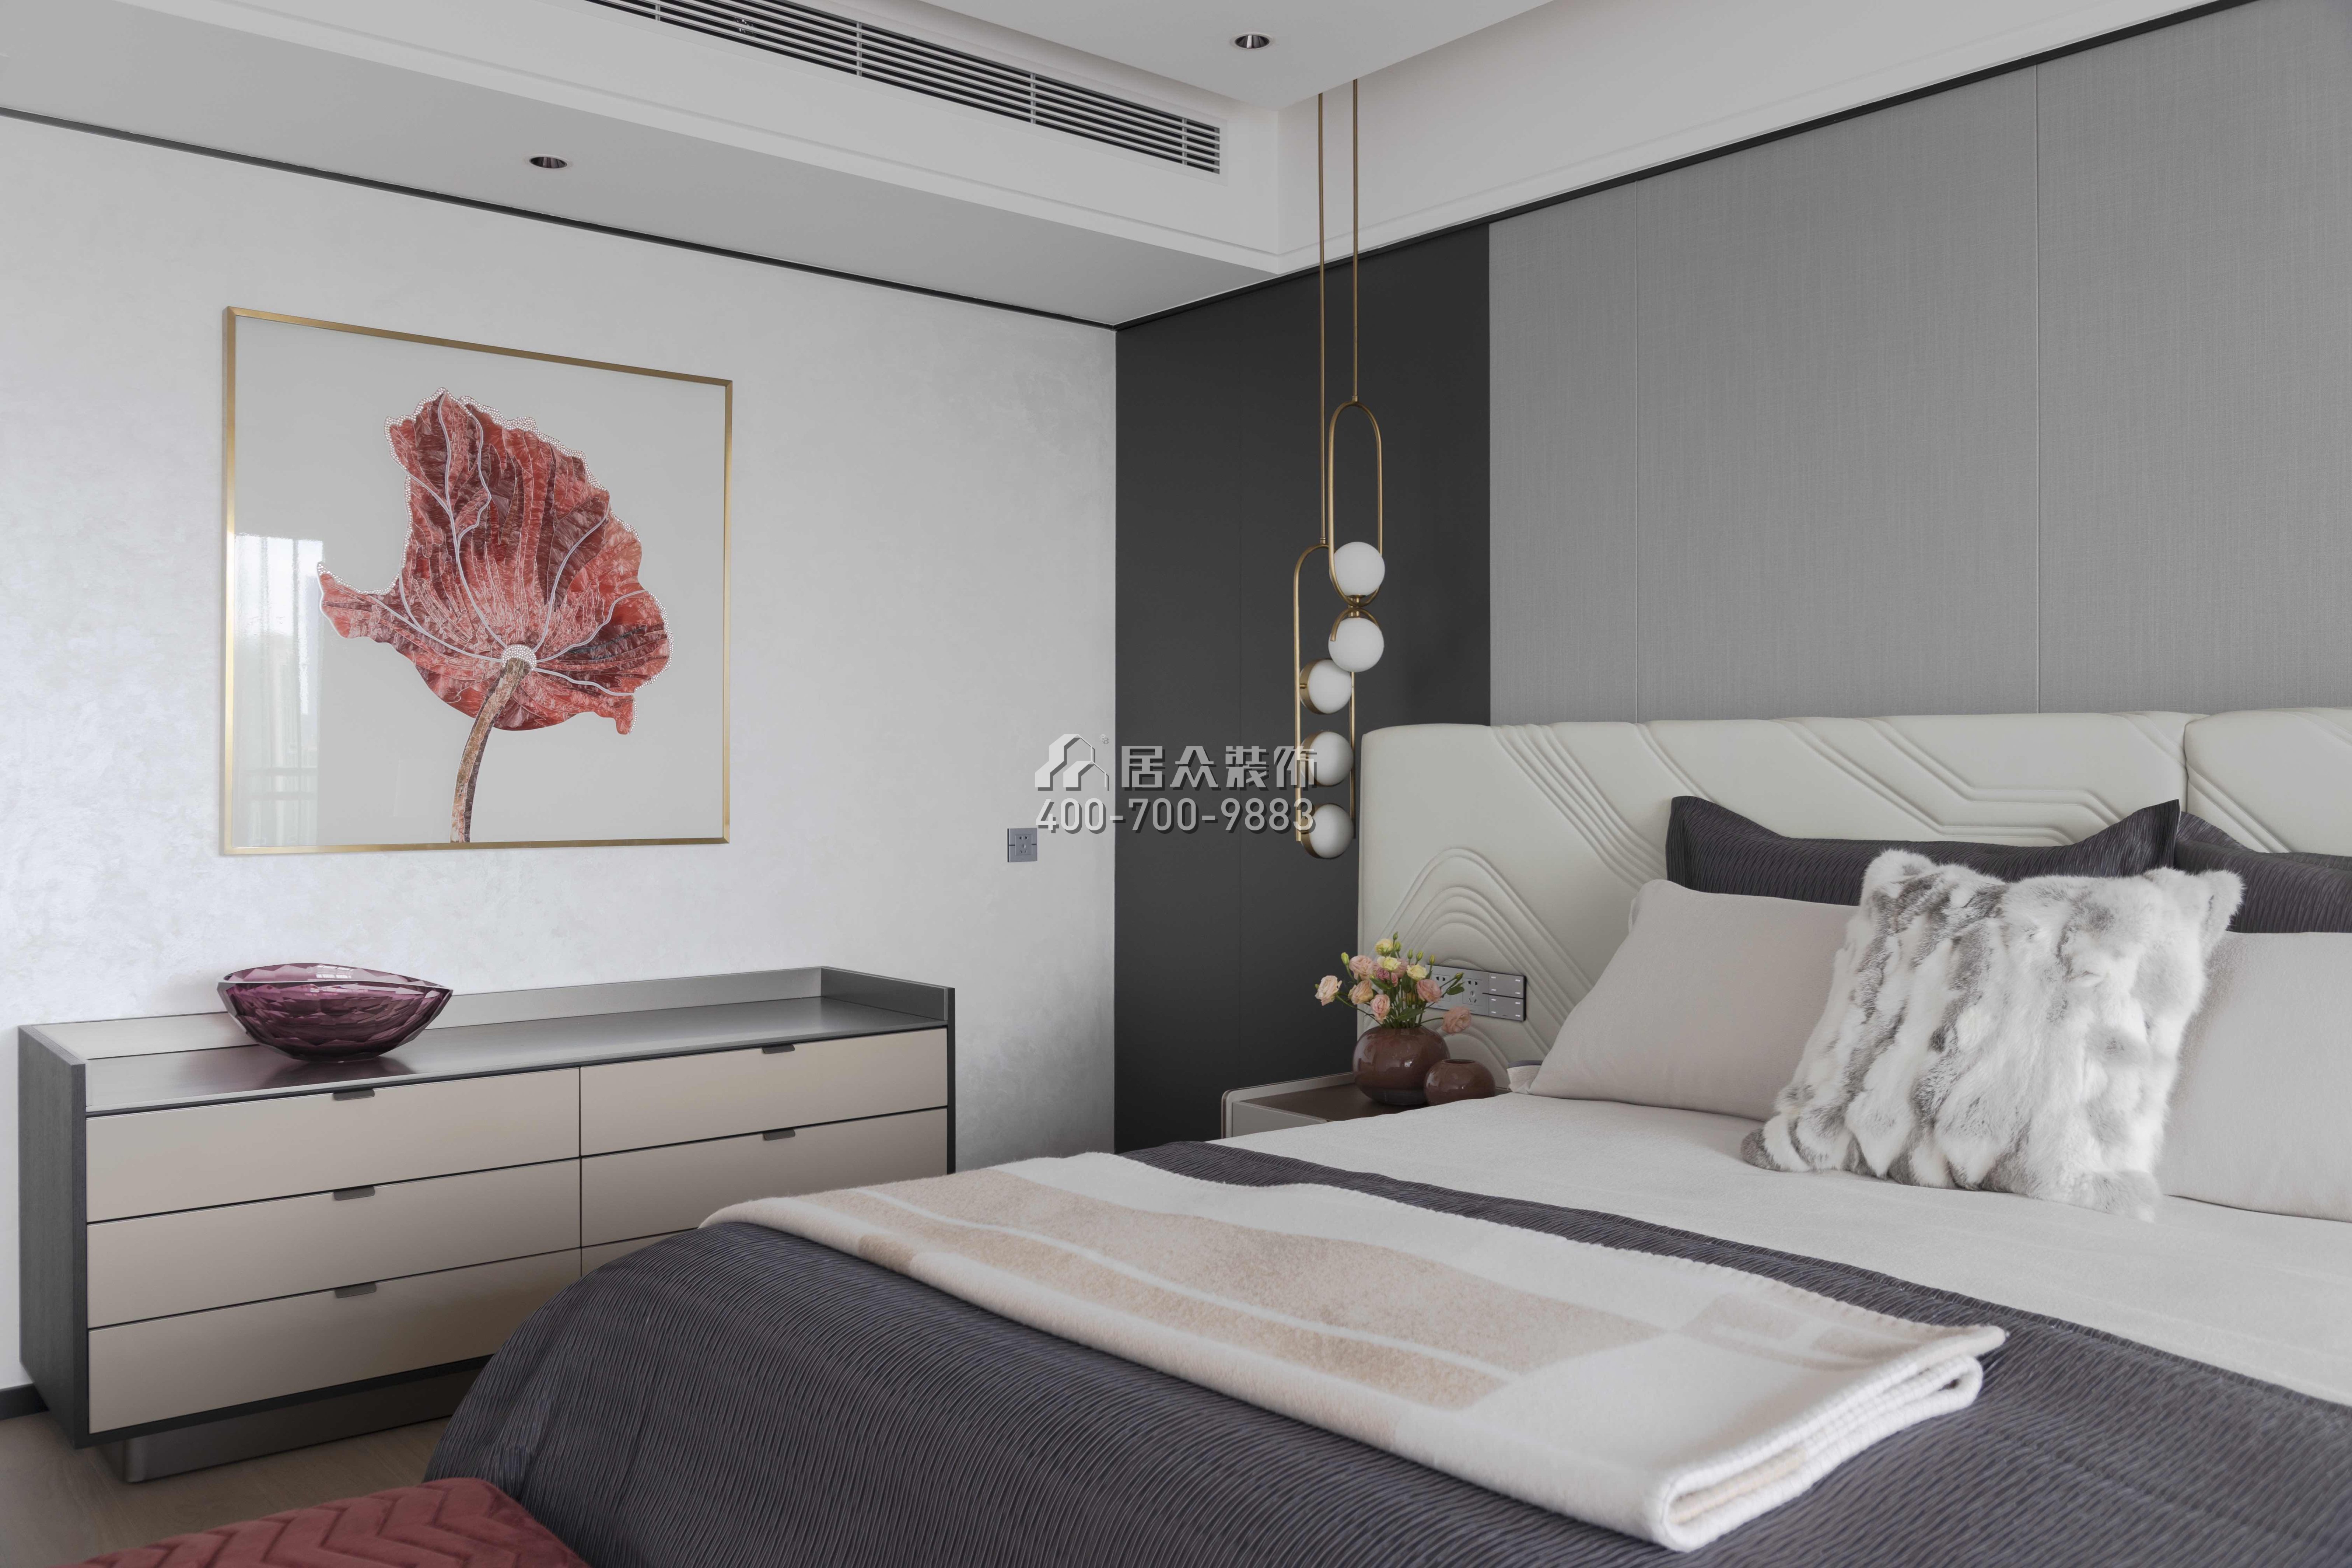 波托菲諾純水岸275平方米現代簡約風格平層戶型臥室裝修效果圖